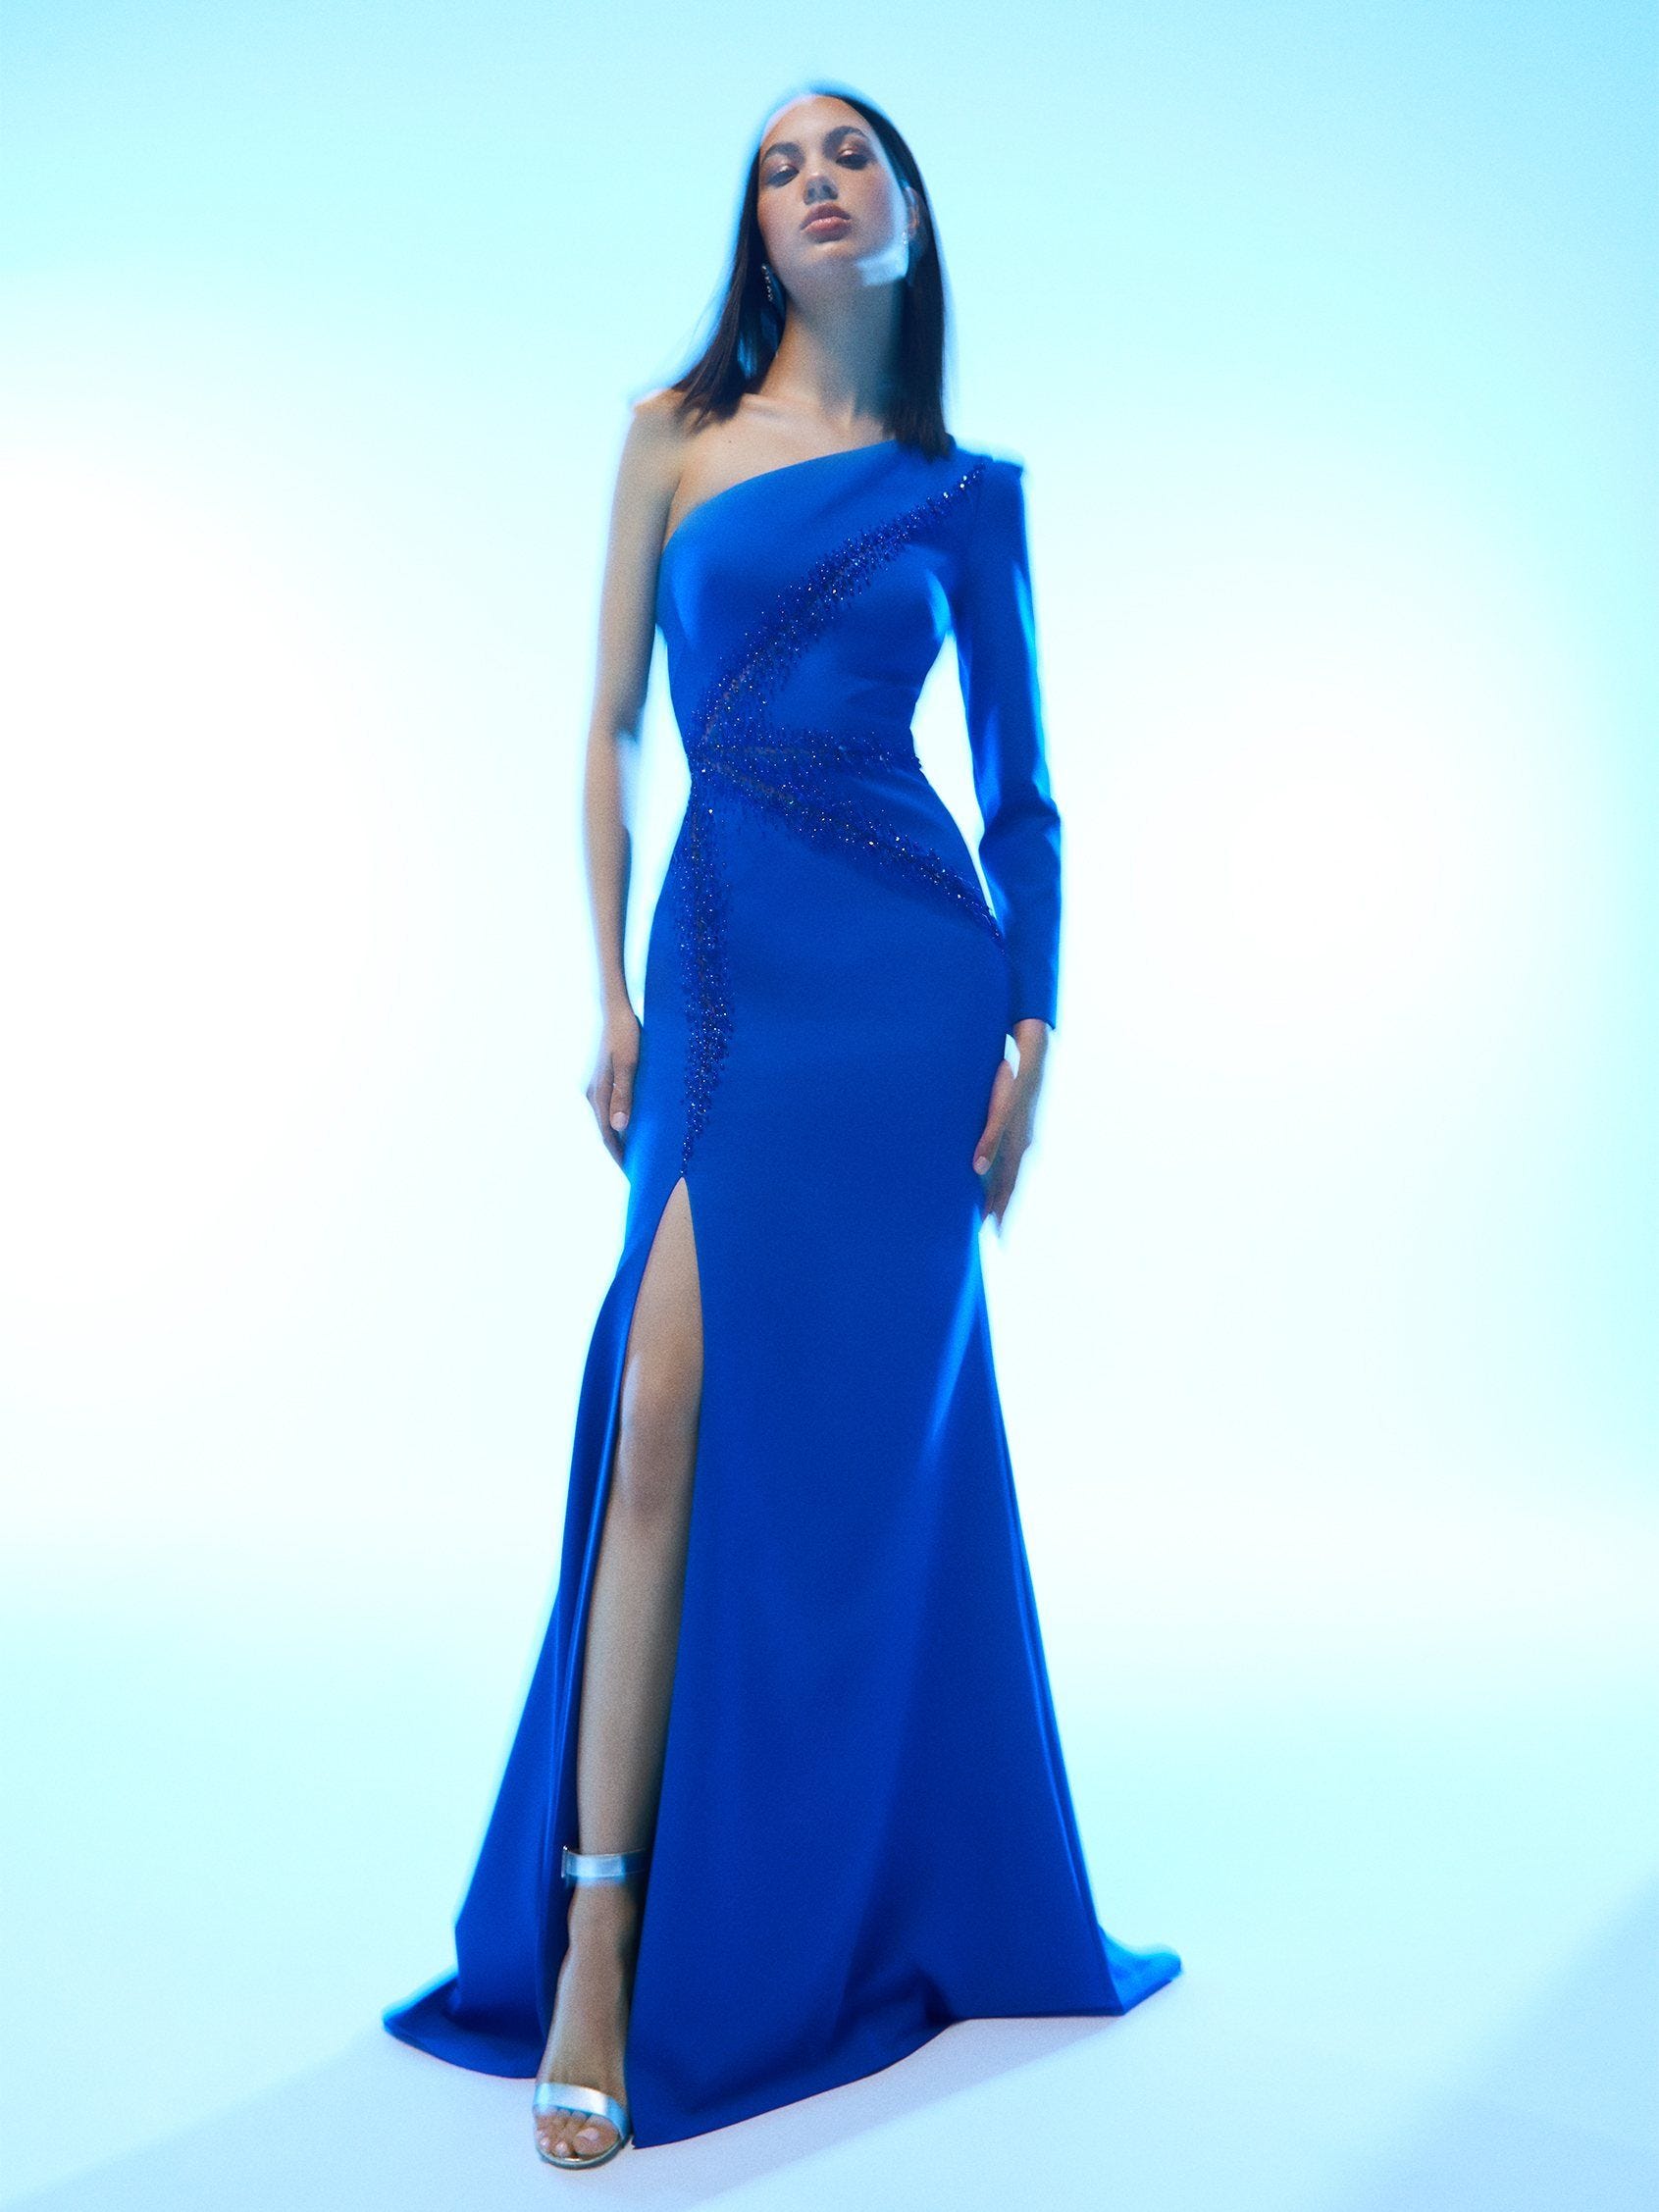 Mujer con vestido de invitada tendencia azul con escote asimétrico y abertura en la pierna.